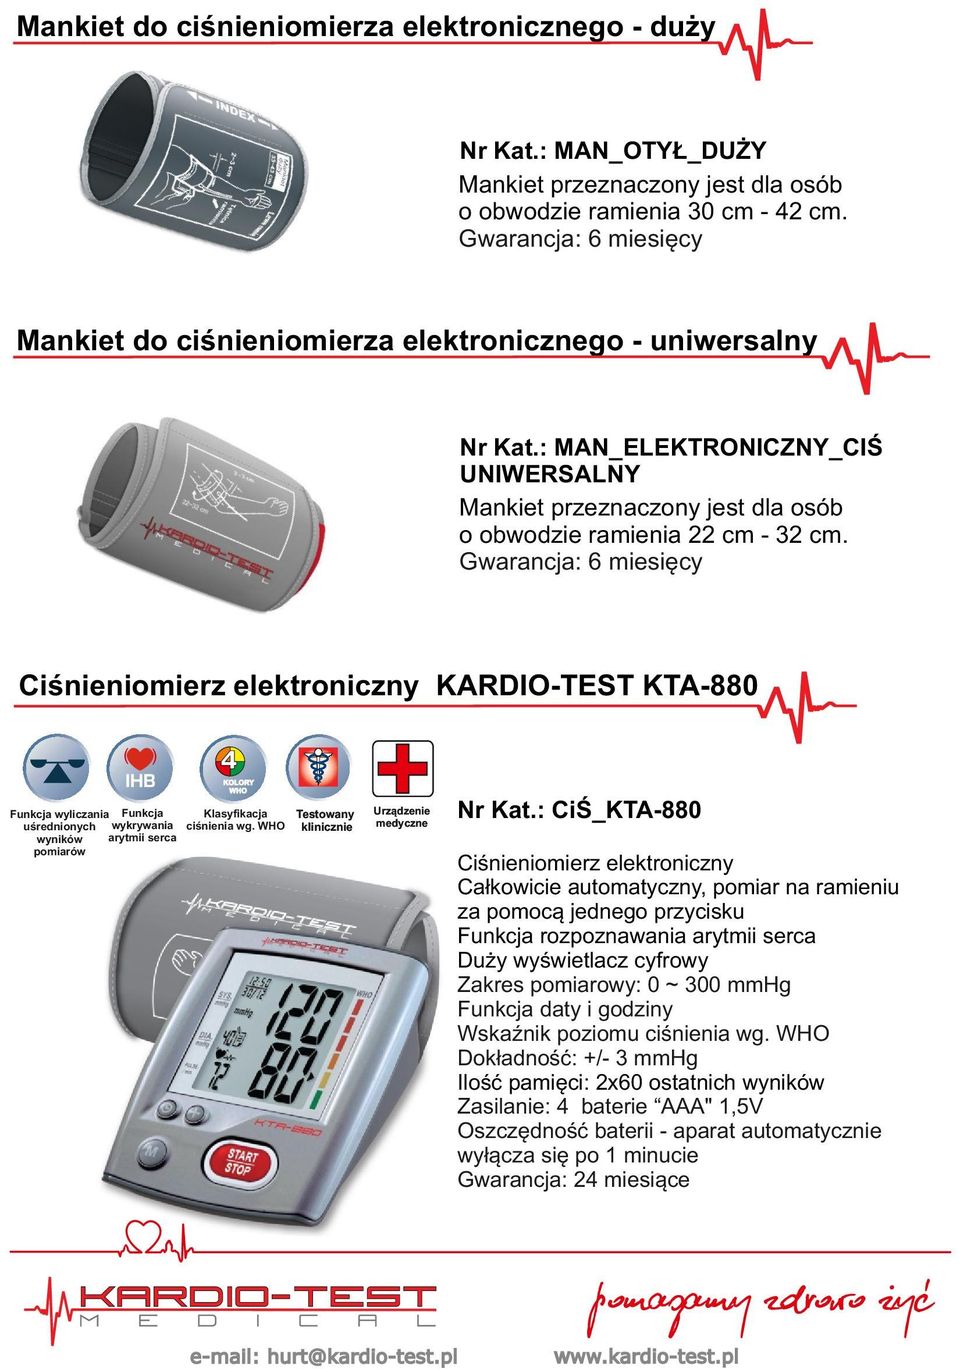 Gwarancja: 6 miesięcy Ciśnieniomierz elektroniczny KARDIO-TEST KTA-880 ( ) 4 KOLORY WHO Klasyfikacja Funkcja wyliczania Funkcja uśrednionych wykrywania ciśnienia wg.